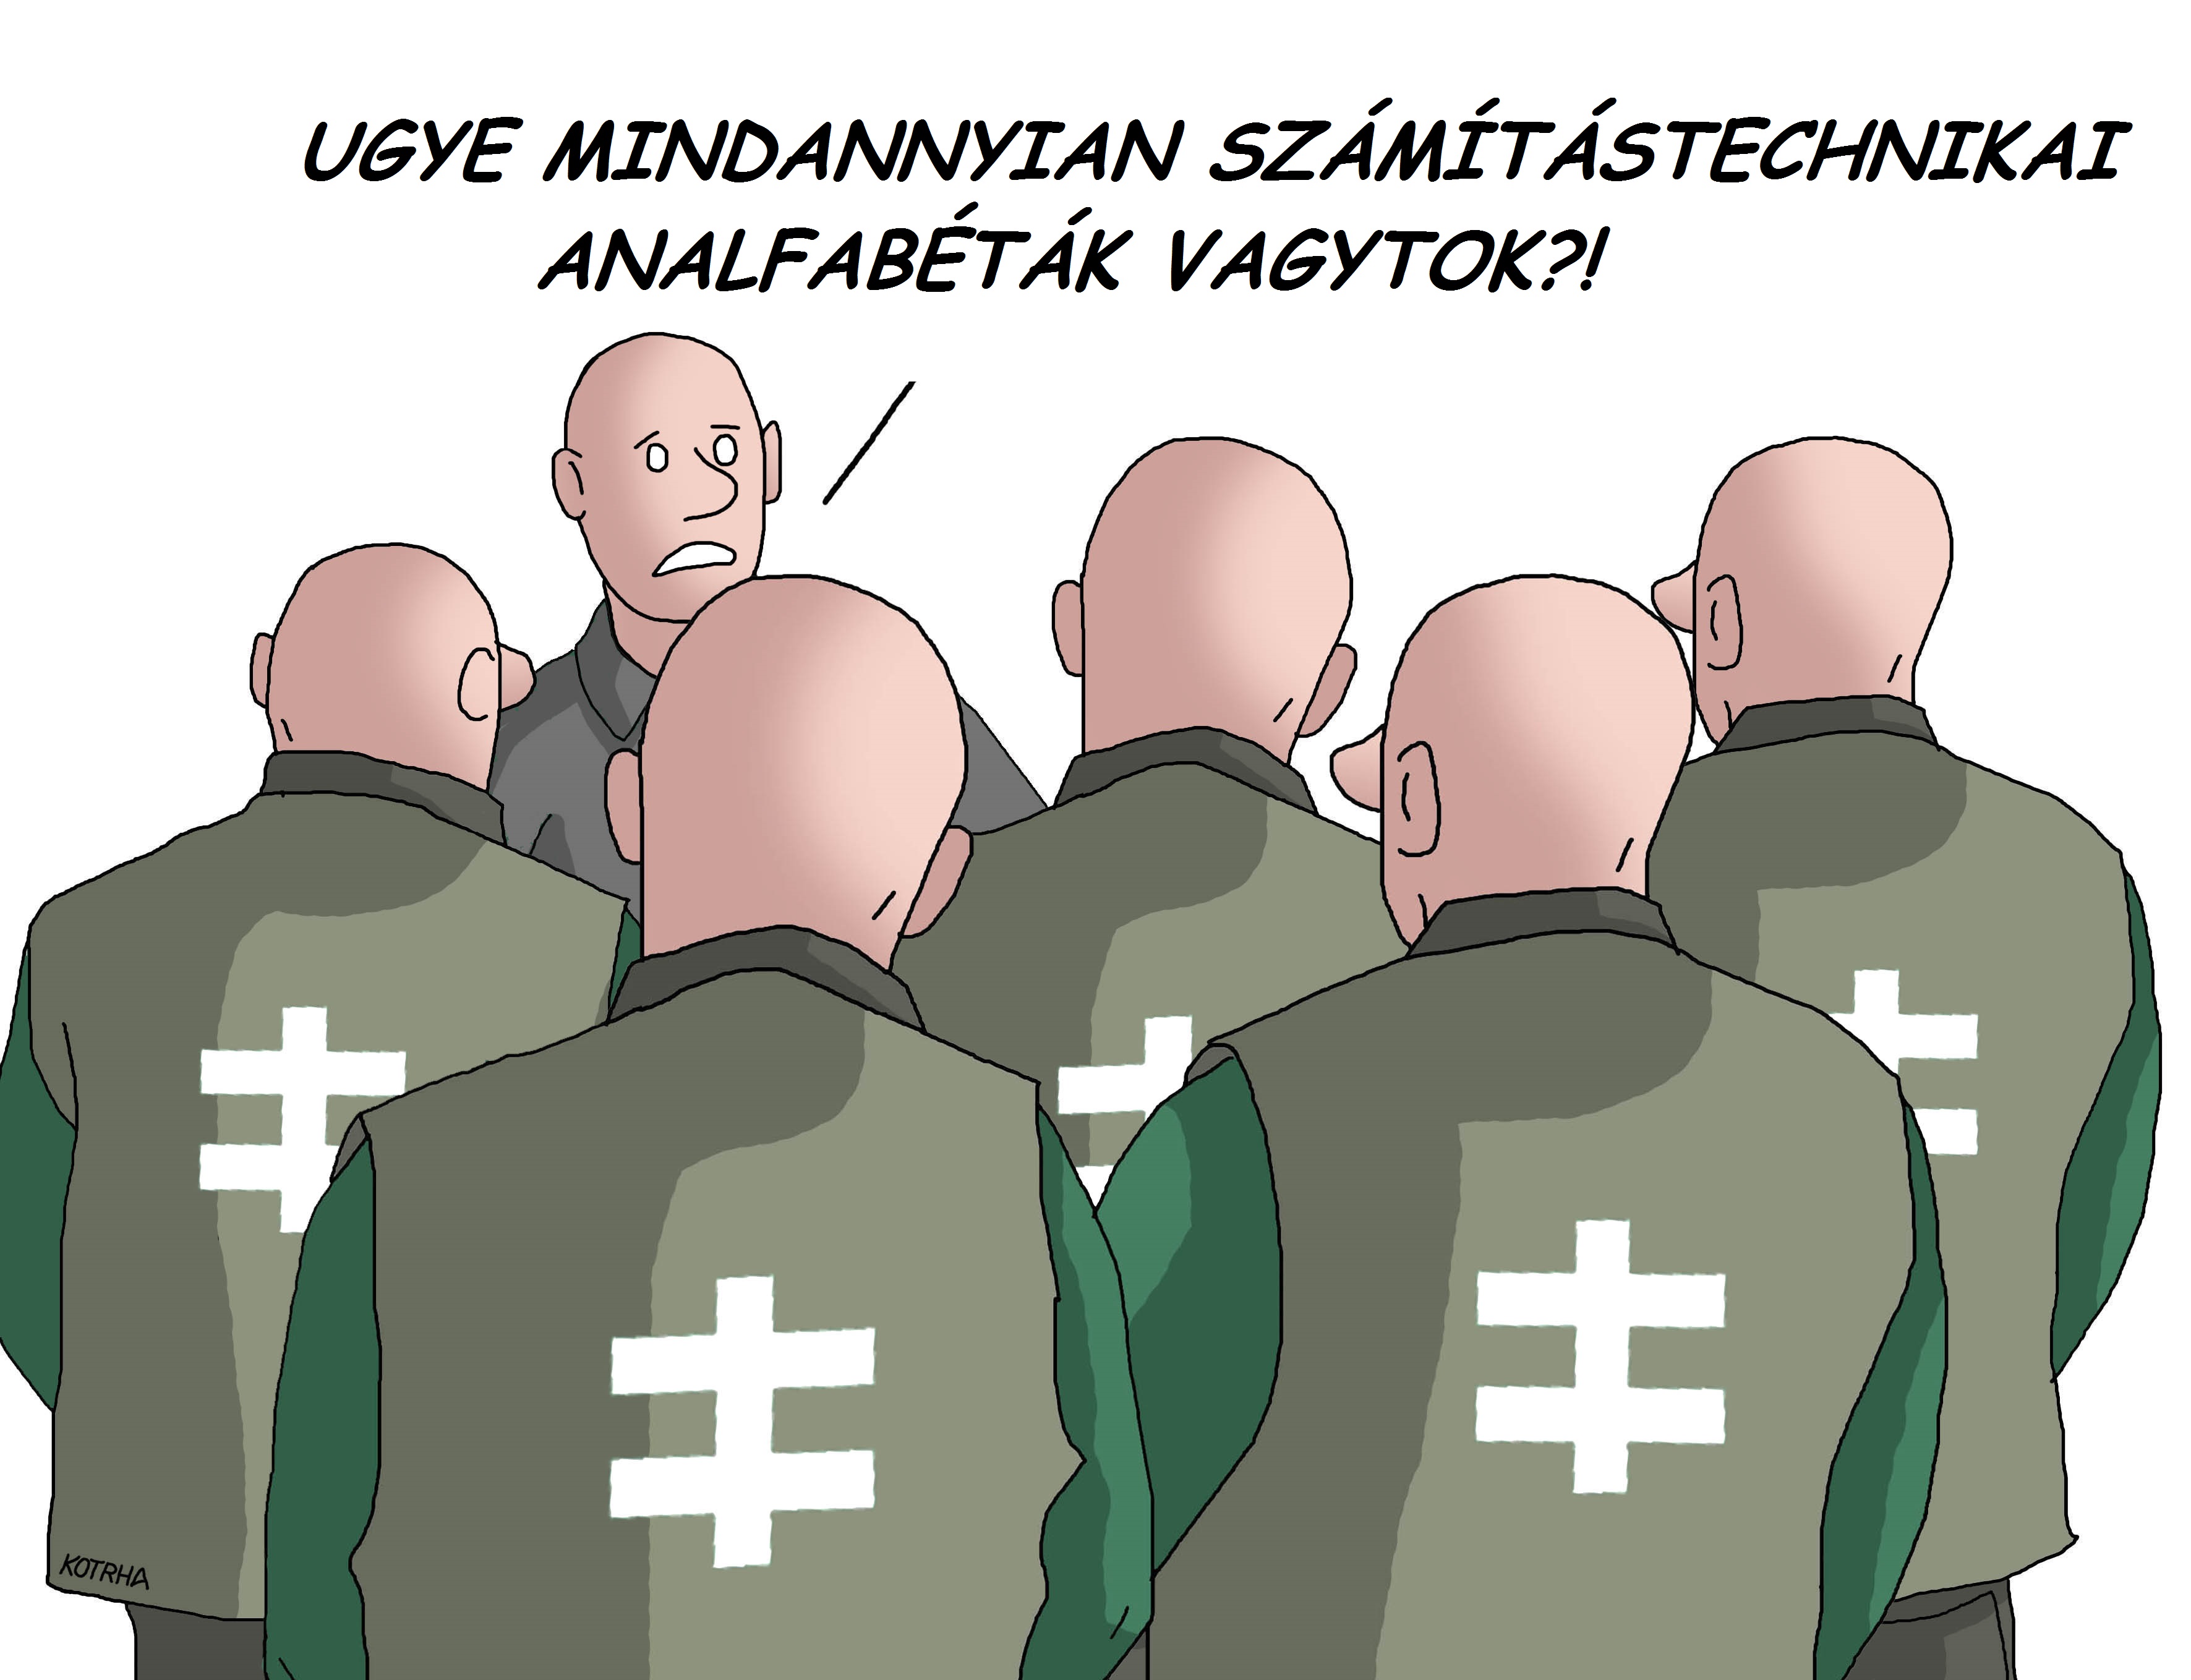 ⋌(Ľubomír Kotrha karikatúrája)